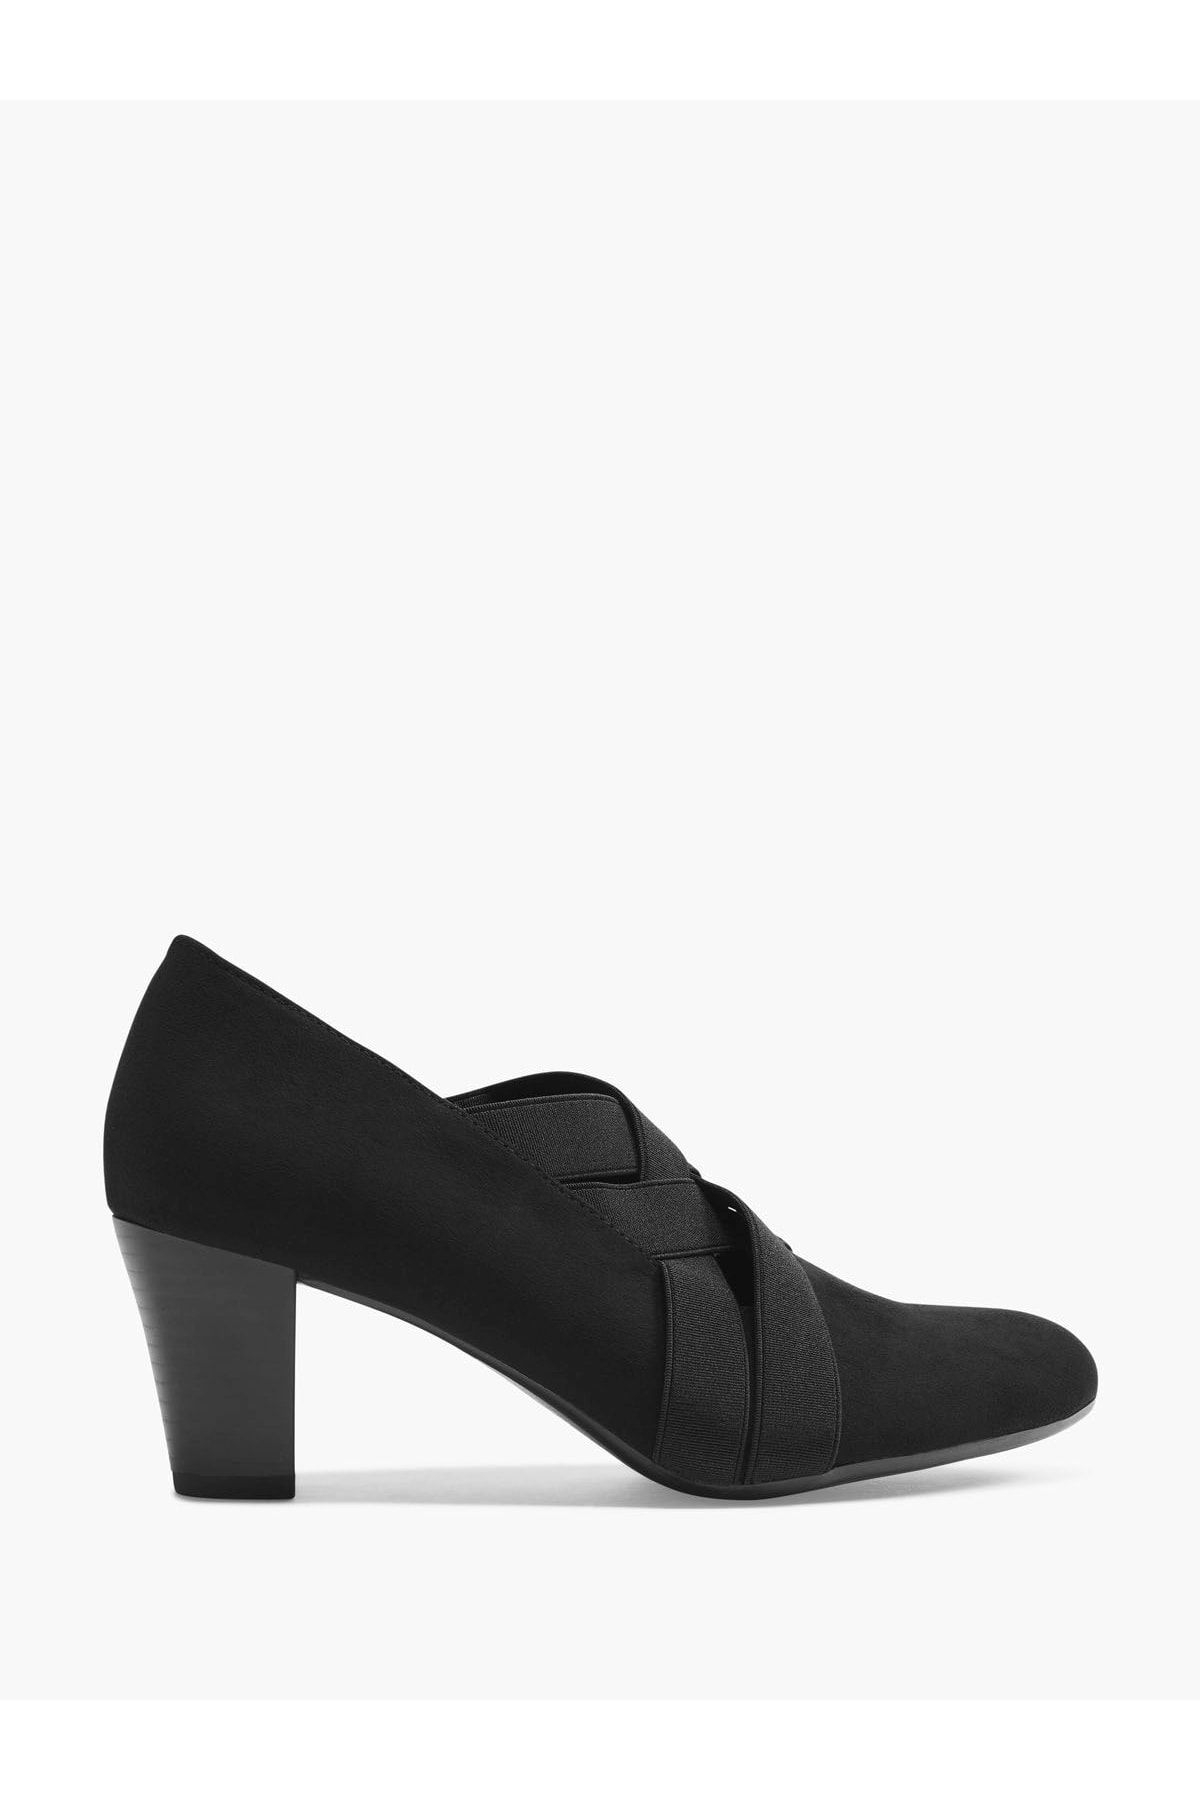 Graceland Deichmann Kadın Siyah Klasik Topuklu Ayakkabı